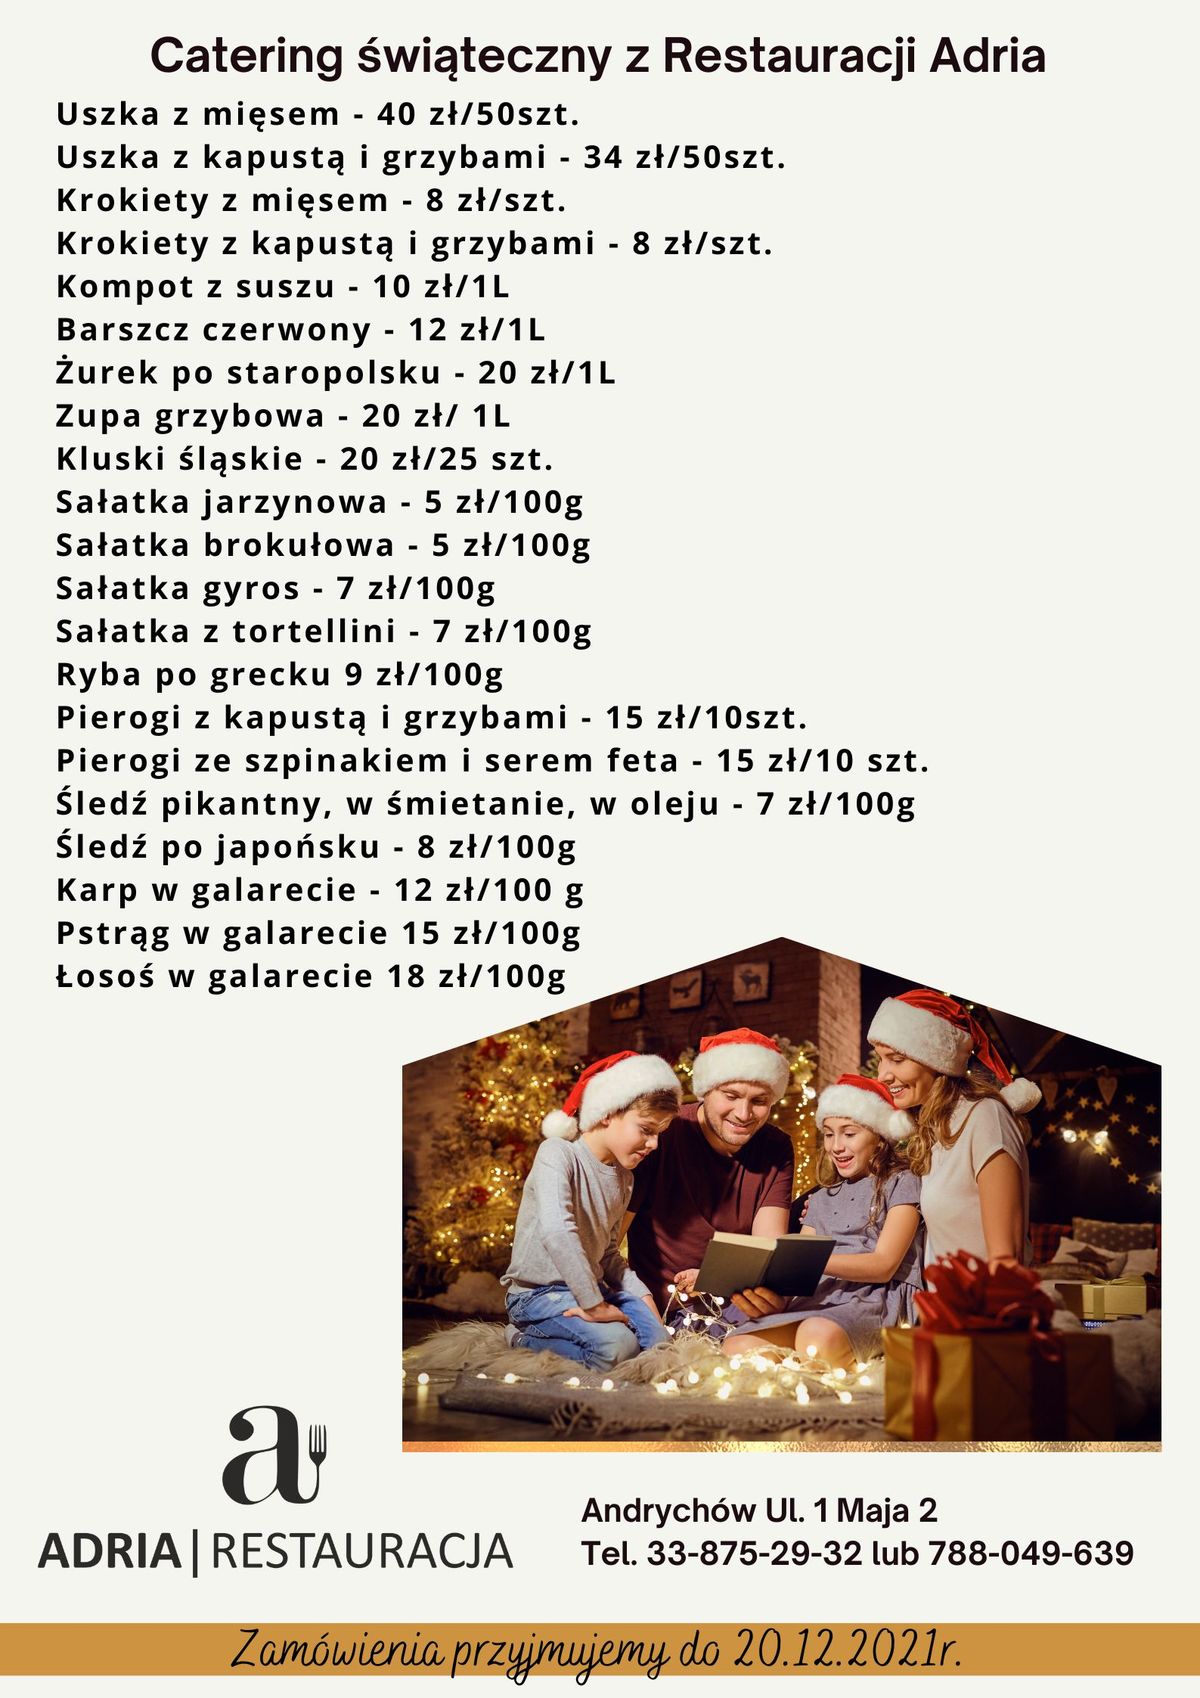 Restauracja Adria w Andrychowie zaprasza do składania zamówień świątecznych